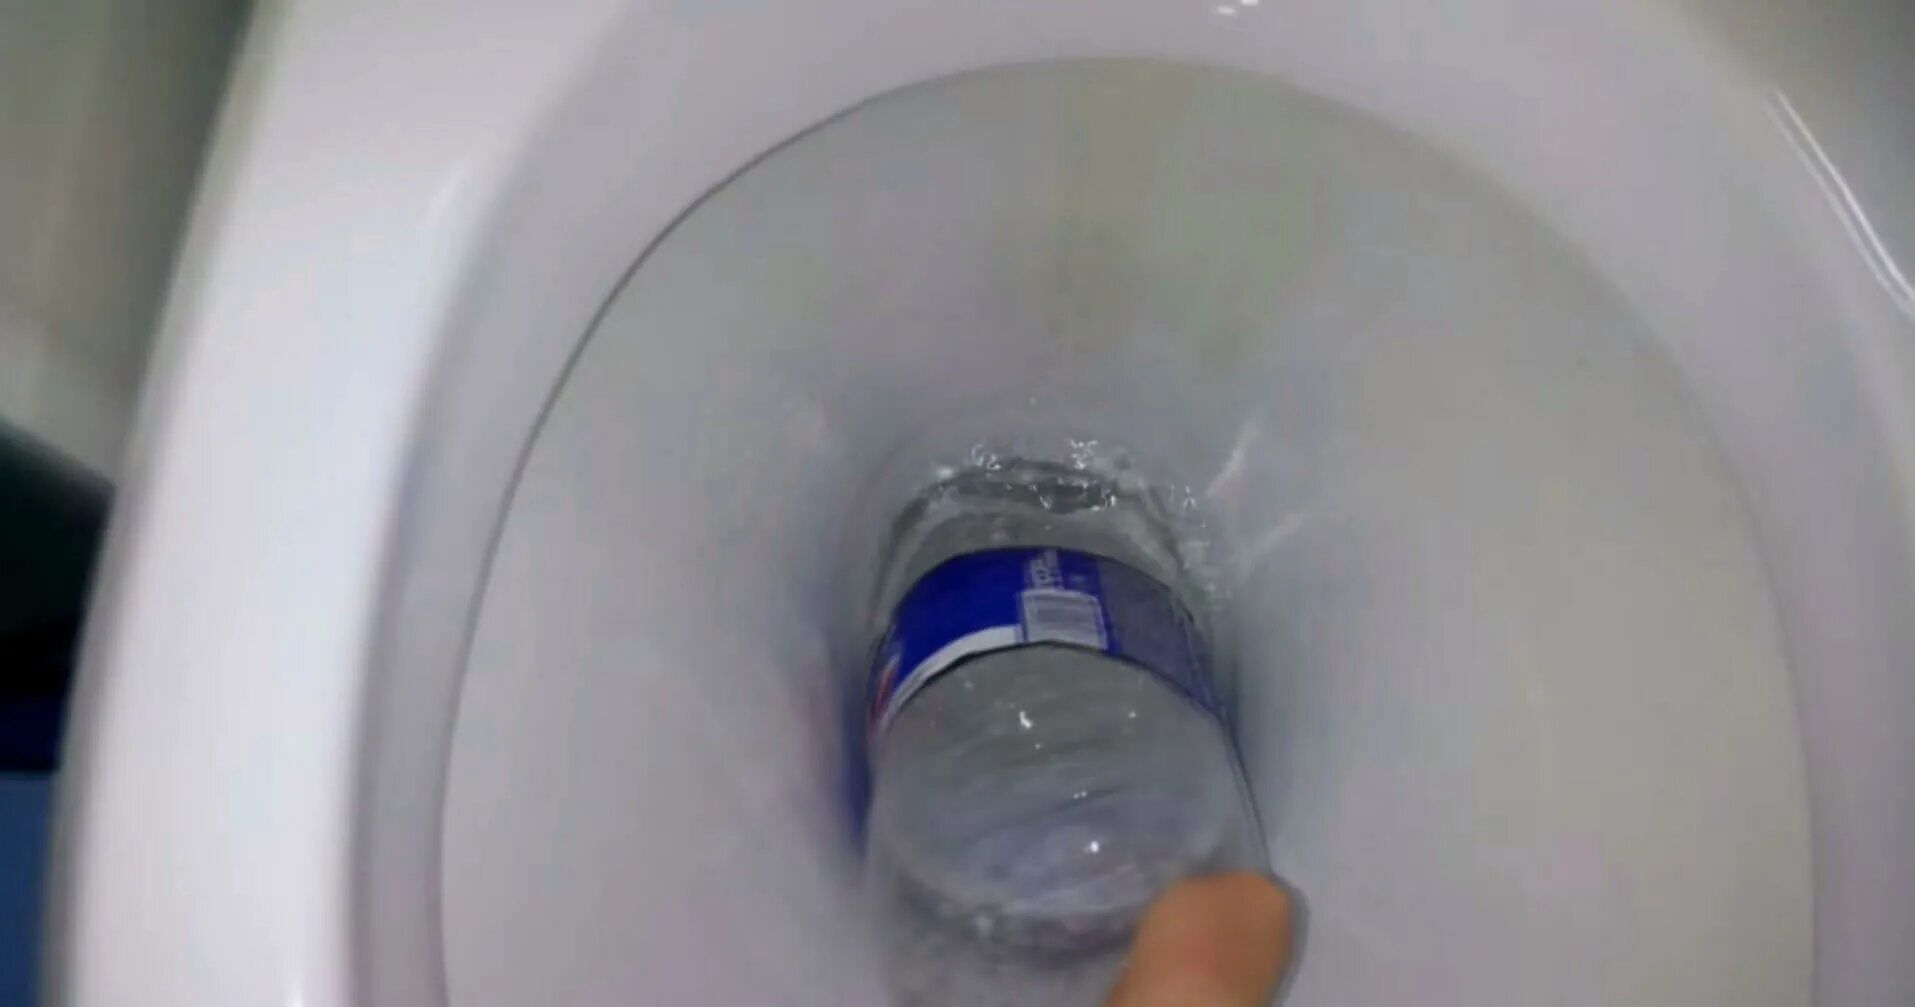 Вантуз из пластиковой бутылки для унитаза. Как убрать воду из унитаза